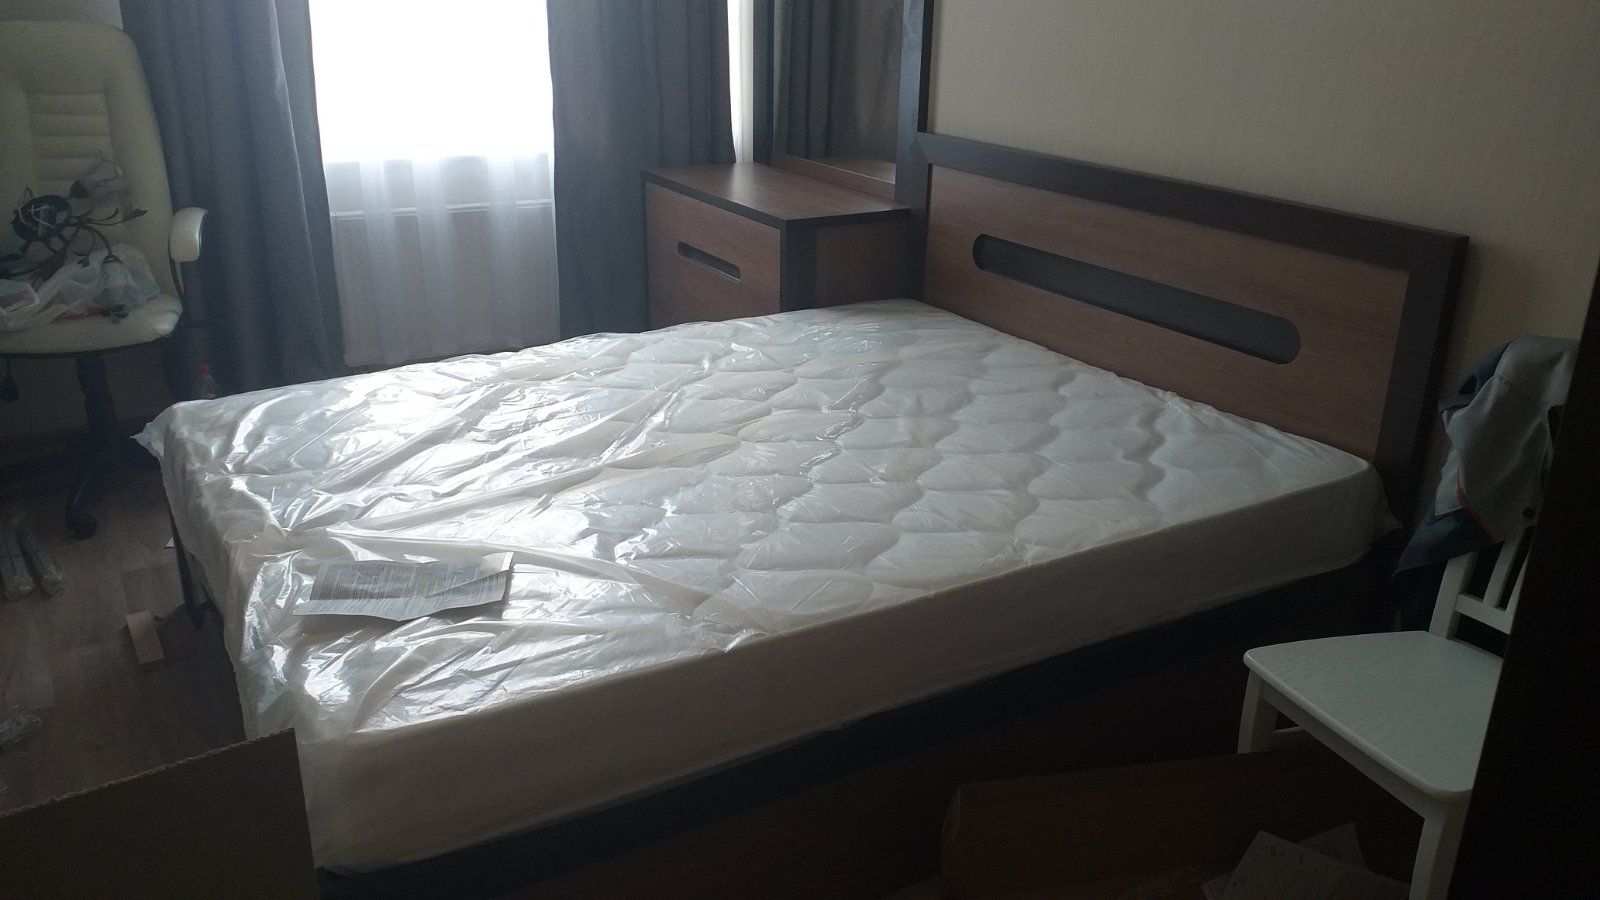 Двуспальная кровать "Альба" 180 х 190 с подъемным механизмом цвет дуб сантана